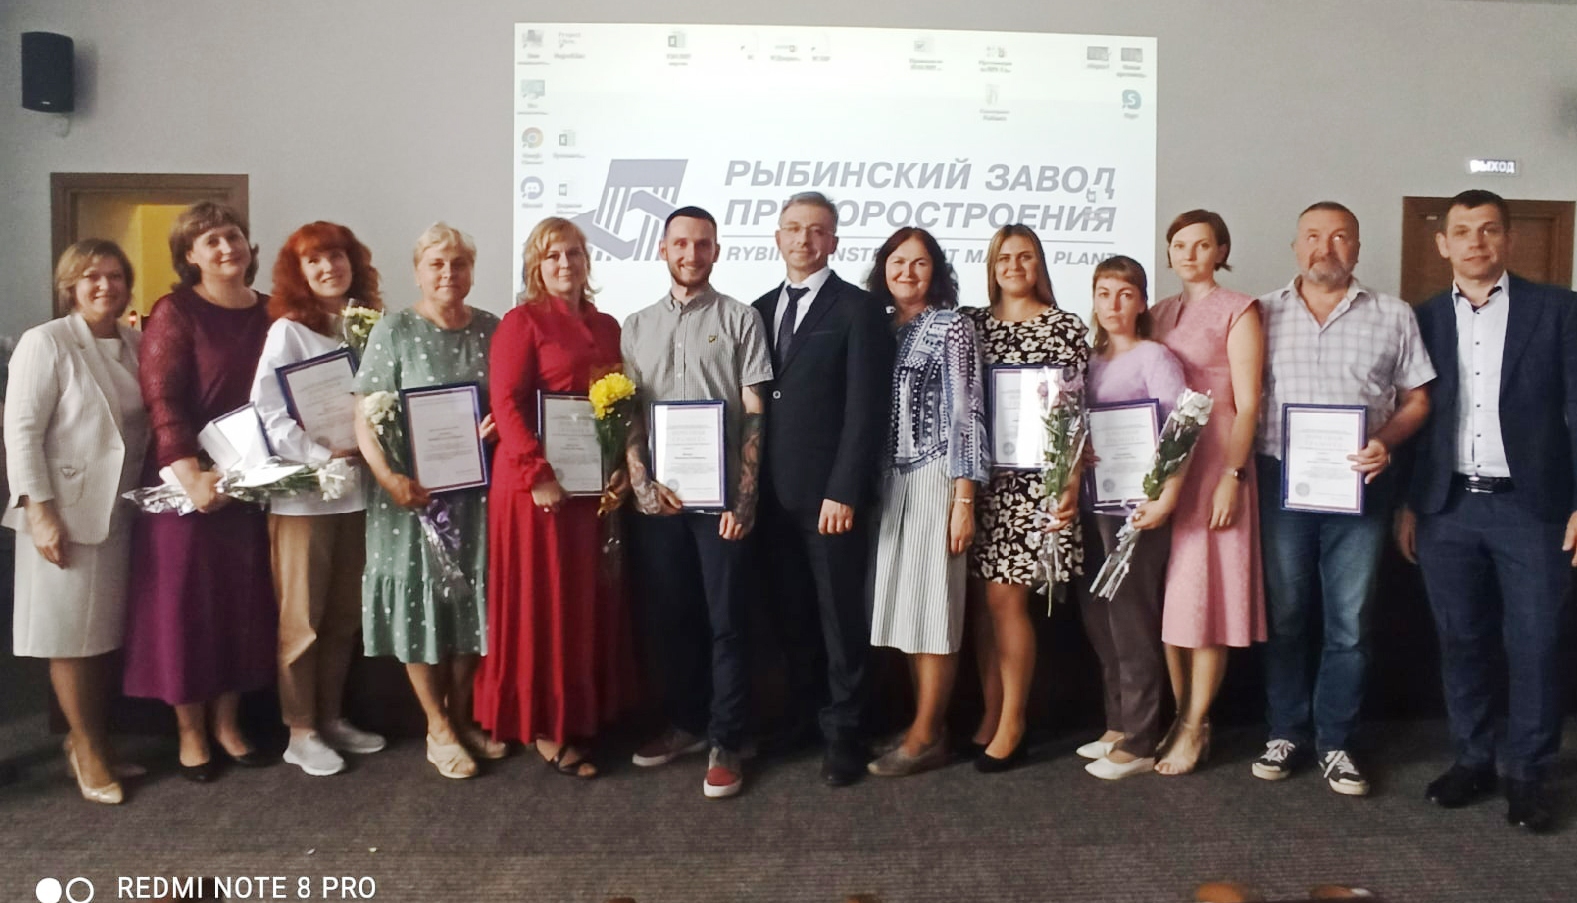 Работники Рыбинского завода приборостроения получили губернаторские и профсоюзные награды